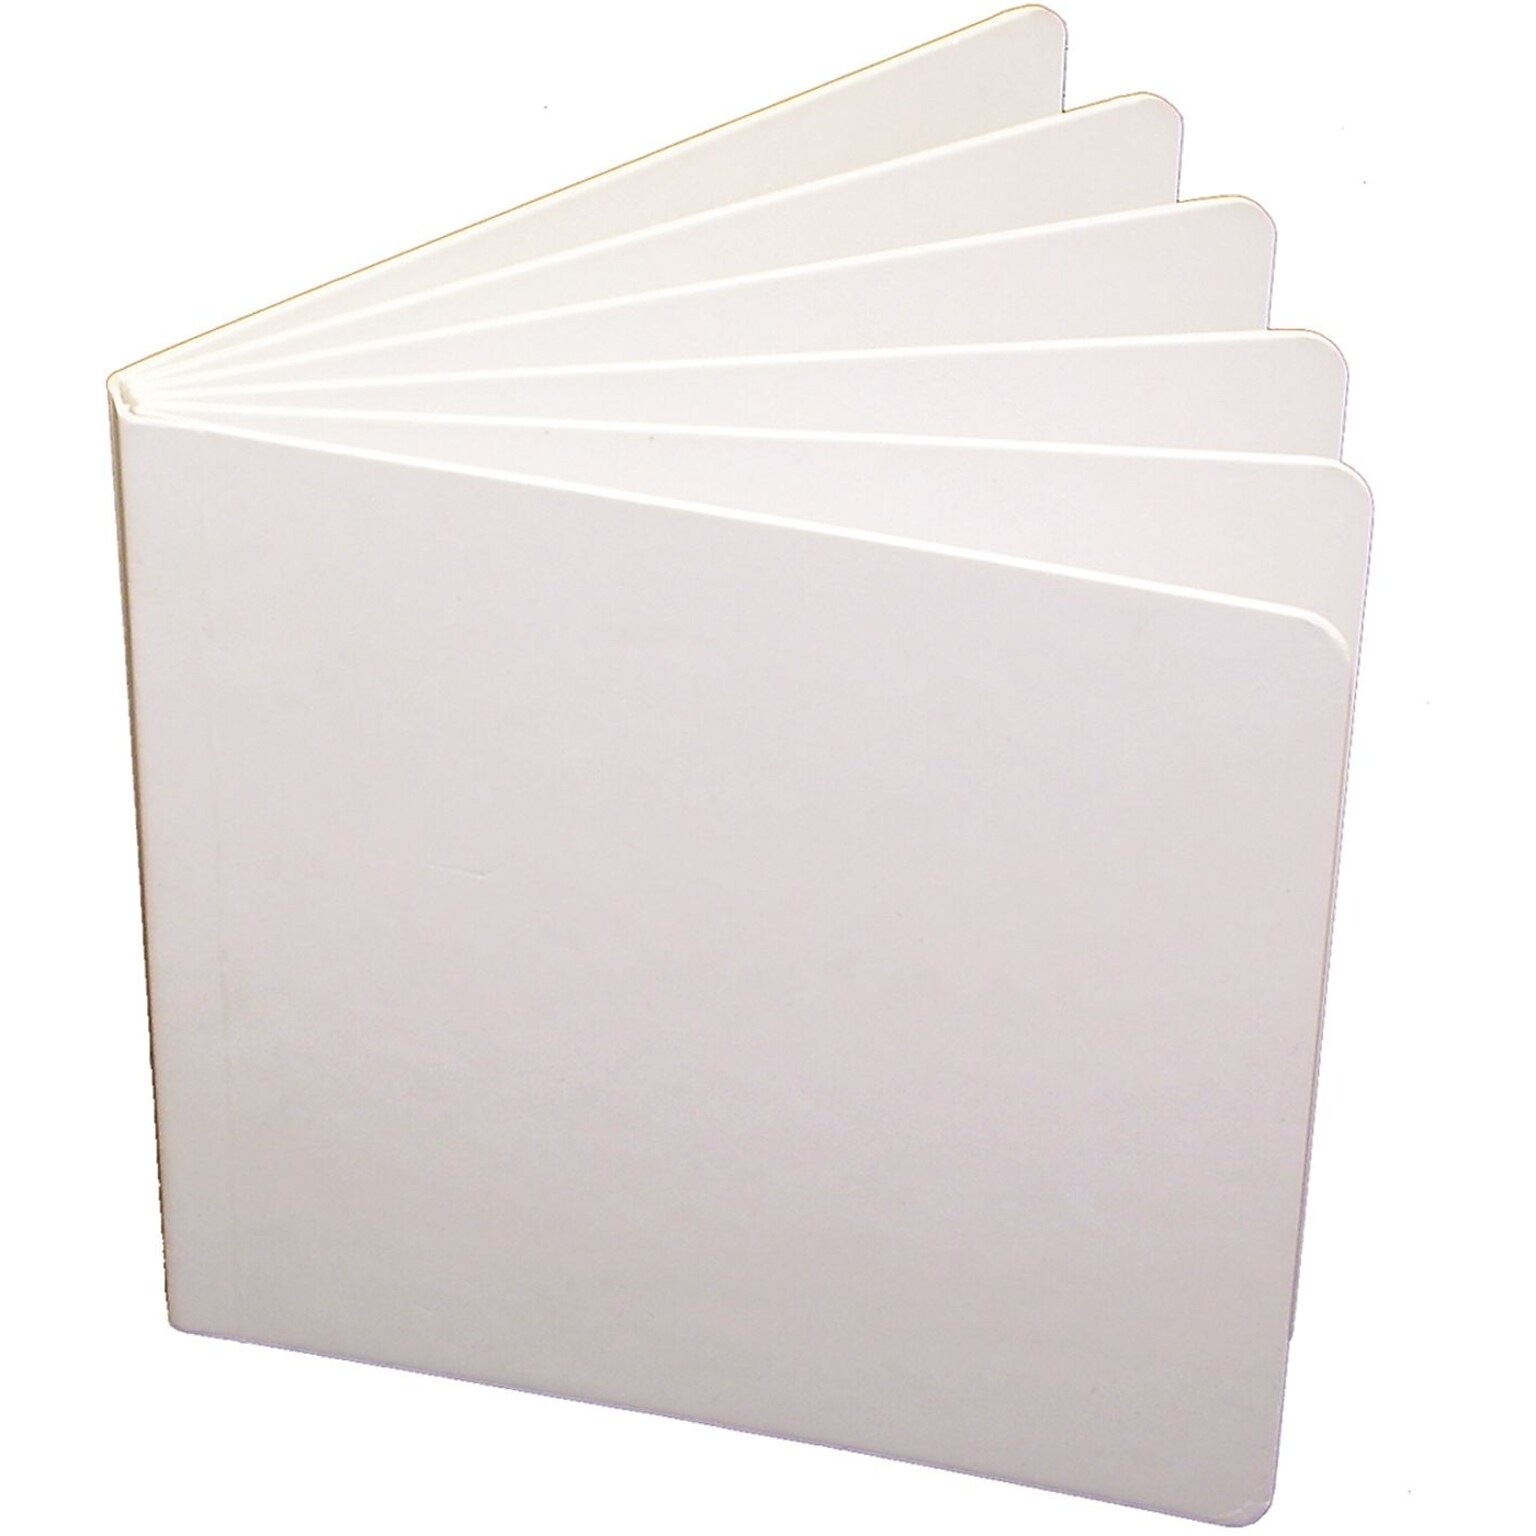 Ashley Subject Notebooks, 5 x 5, 6 Sheets, White, 10/Bundle (ASH10704)